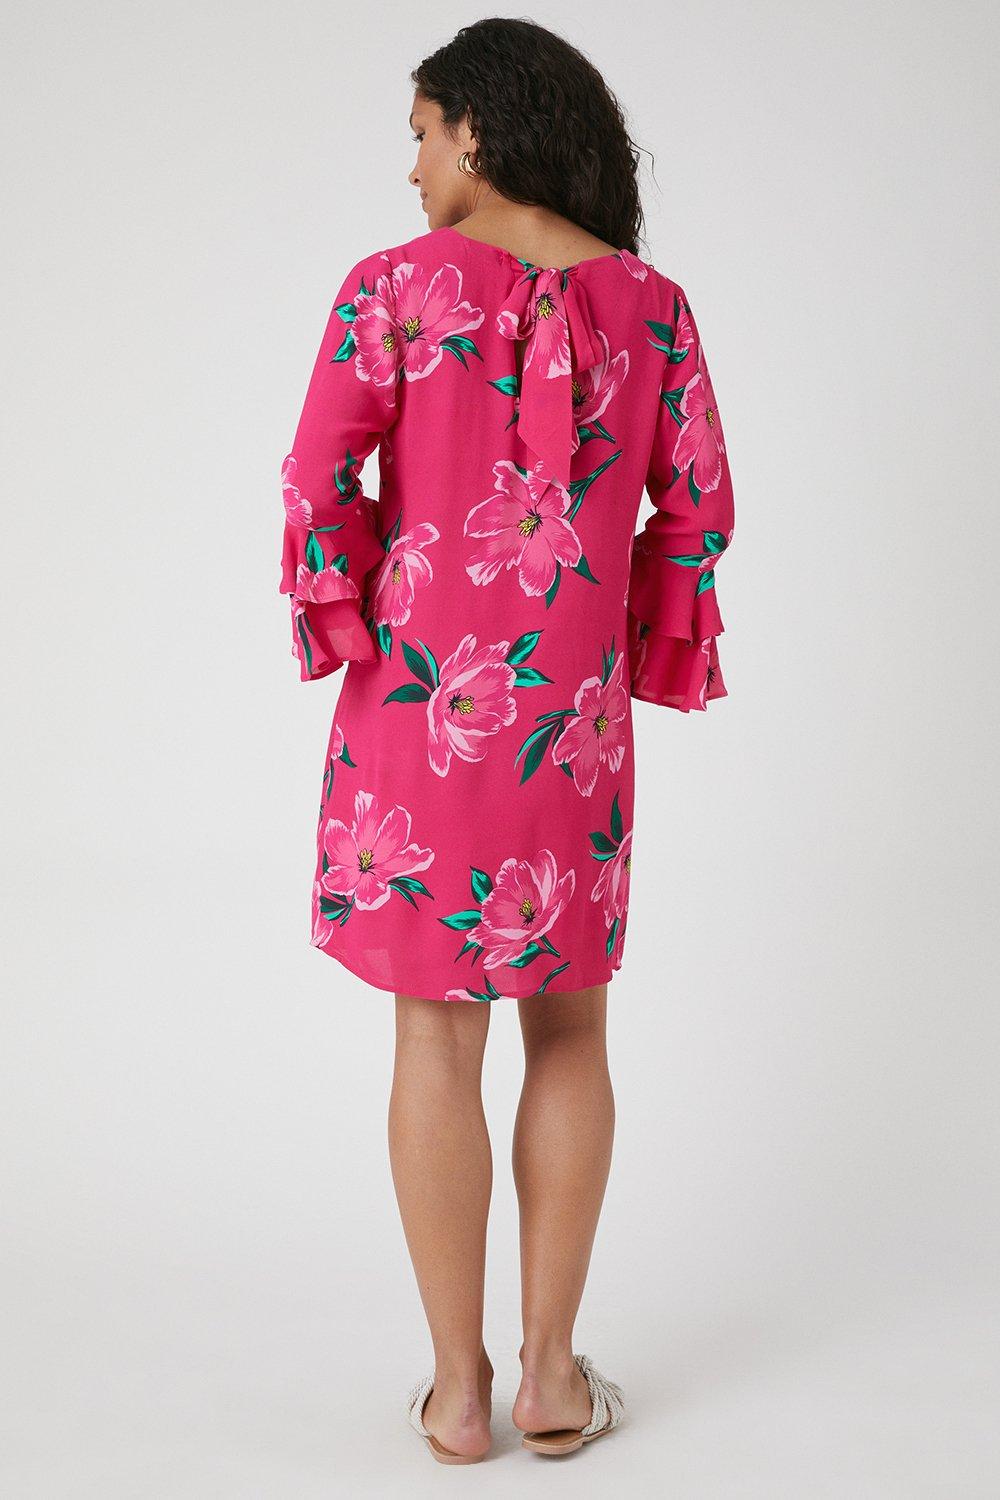 Elizabeth Crosby Pippa Ruffle Faux Wrap Dress in Rose - Size XS